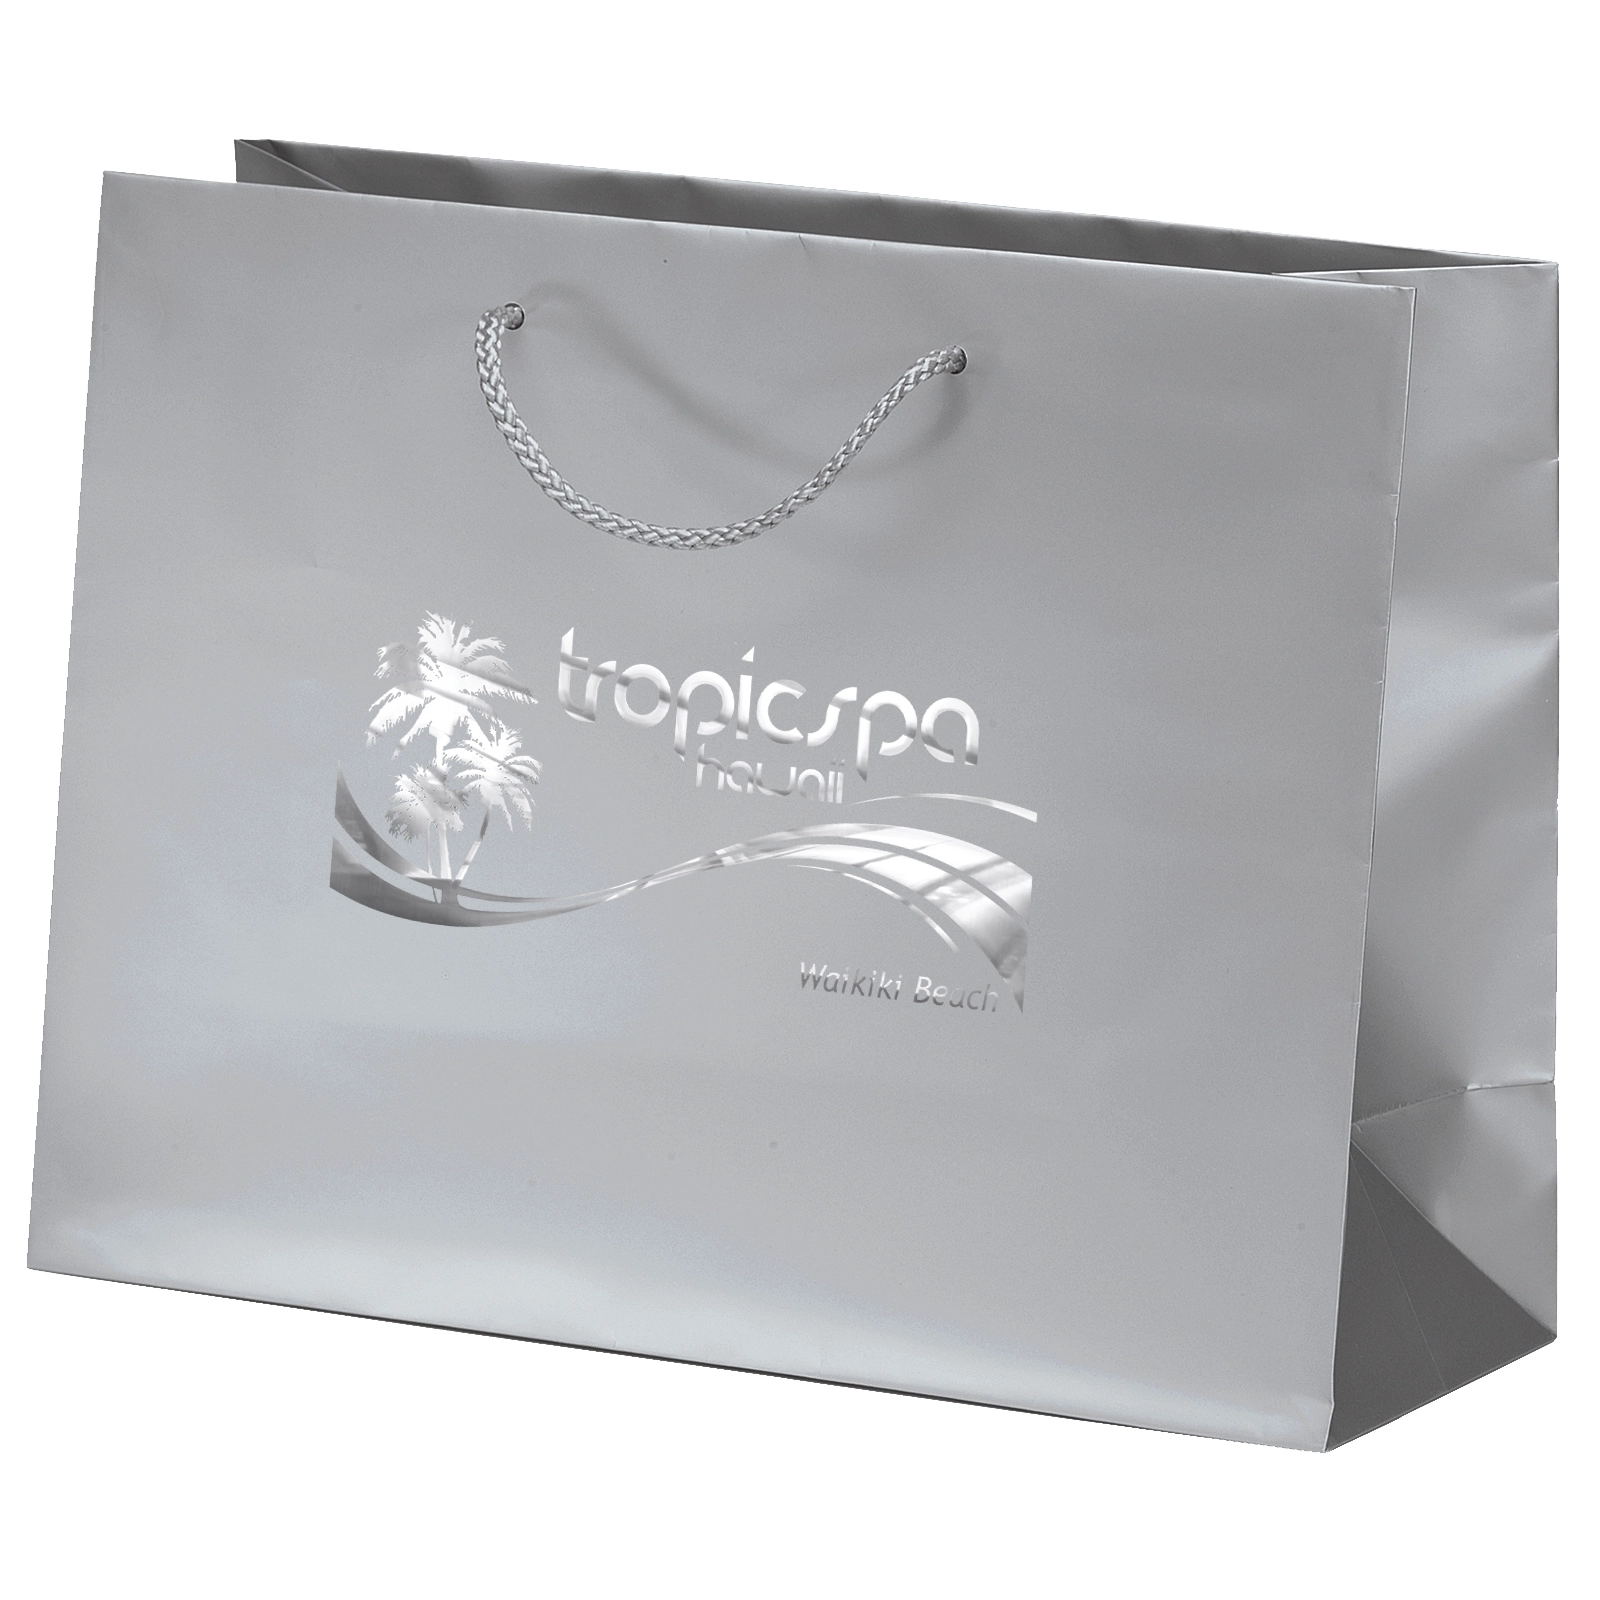 Download Matte Laminated Euro Logo Tote Bag Shopping Bag - 13 x 10 x 5 | ePromo